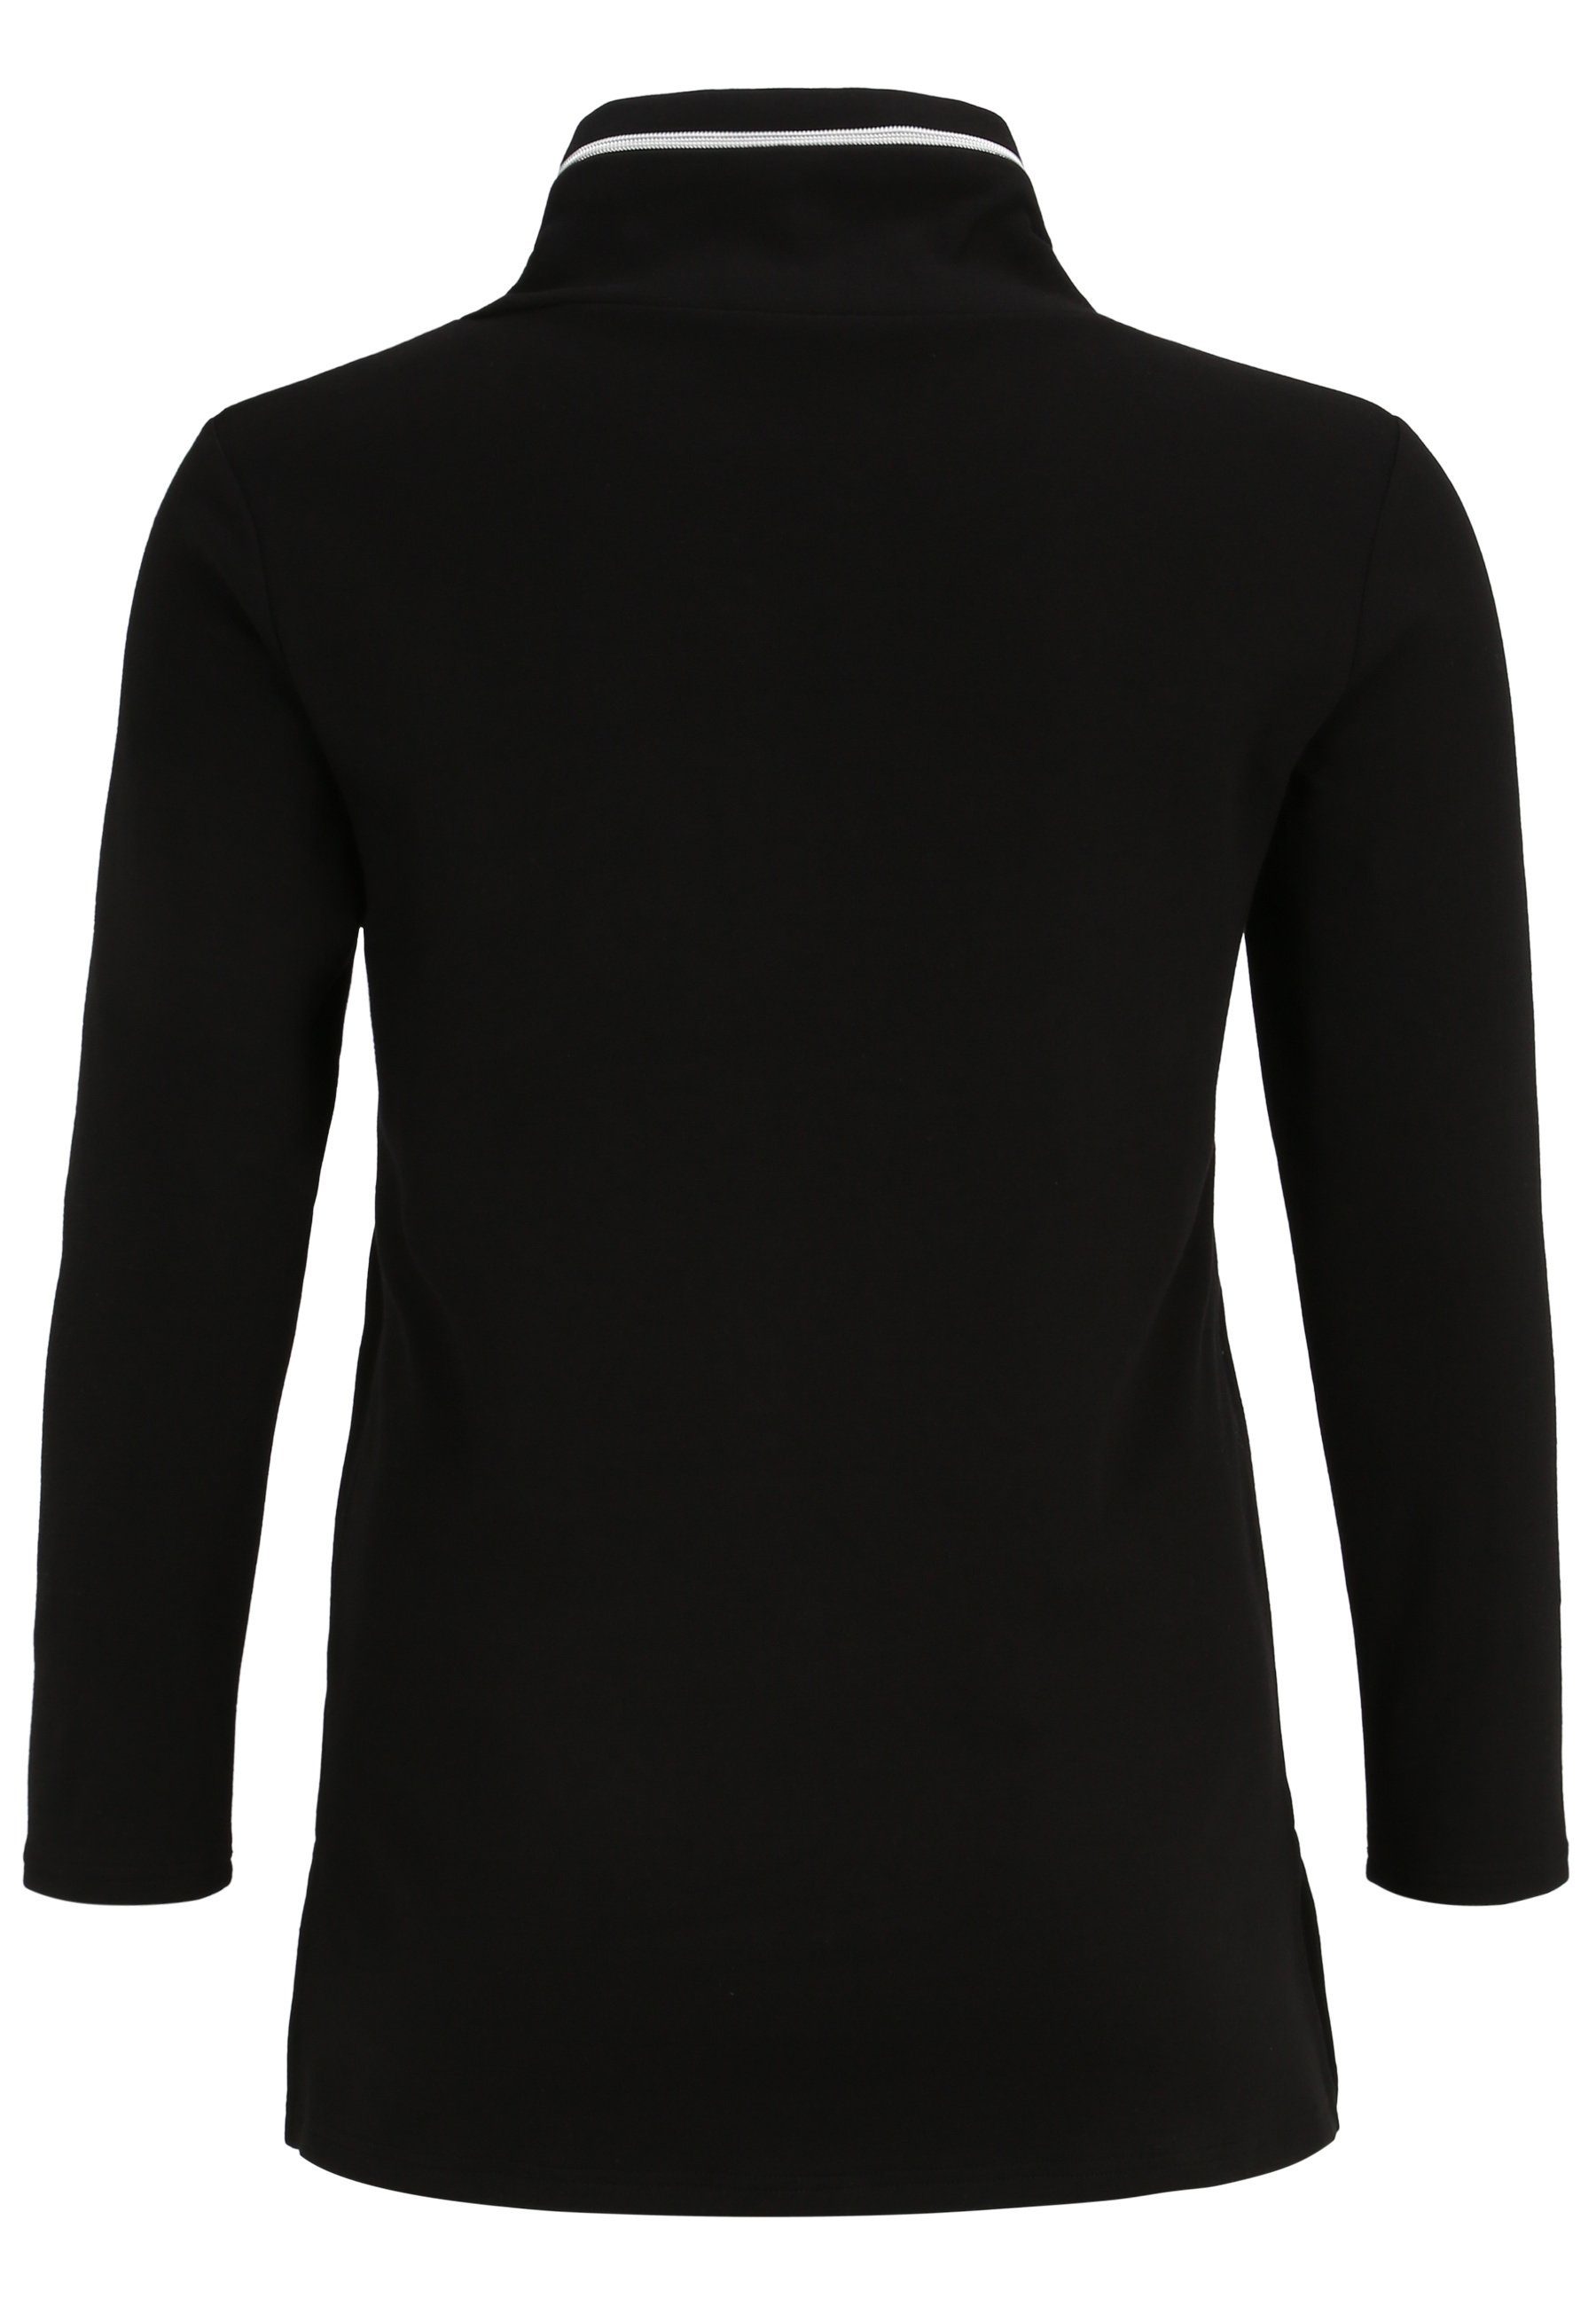 Longshirt Nylon-Tasche Design und modernem Motivprint Streich mit Sweatshirt schwarz/weiss mit Doris